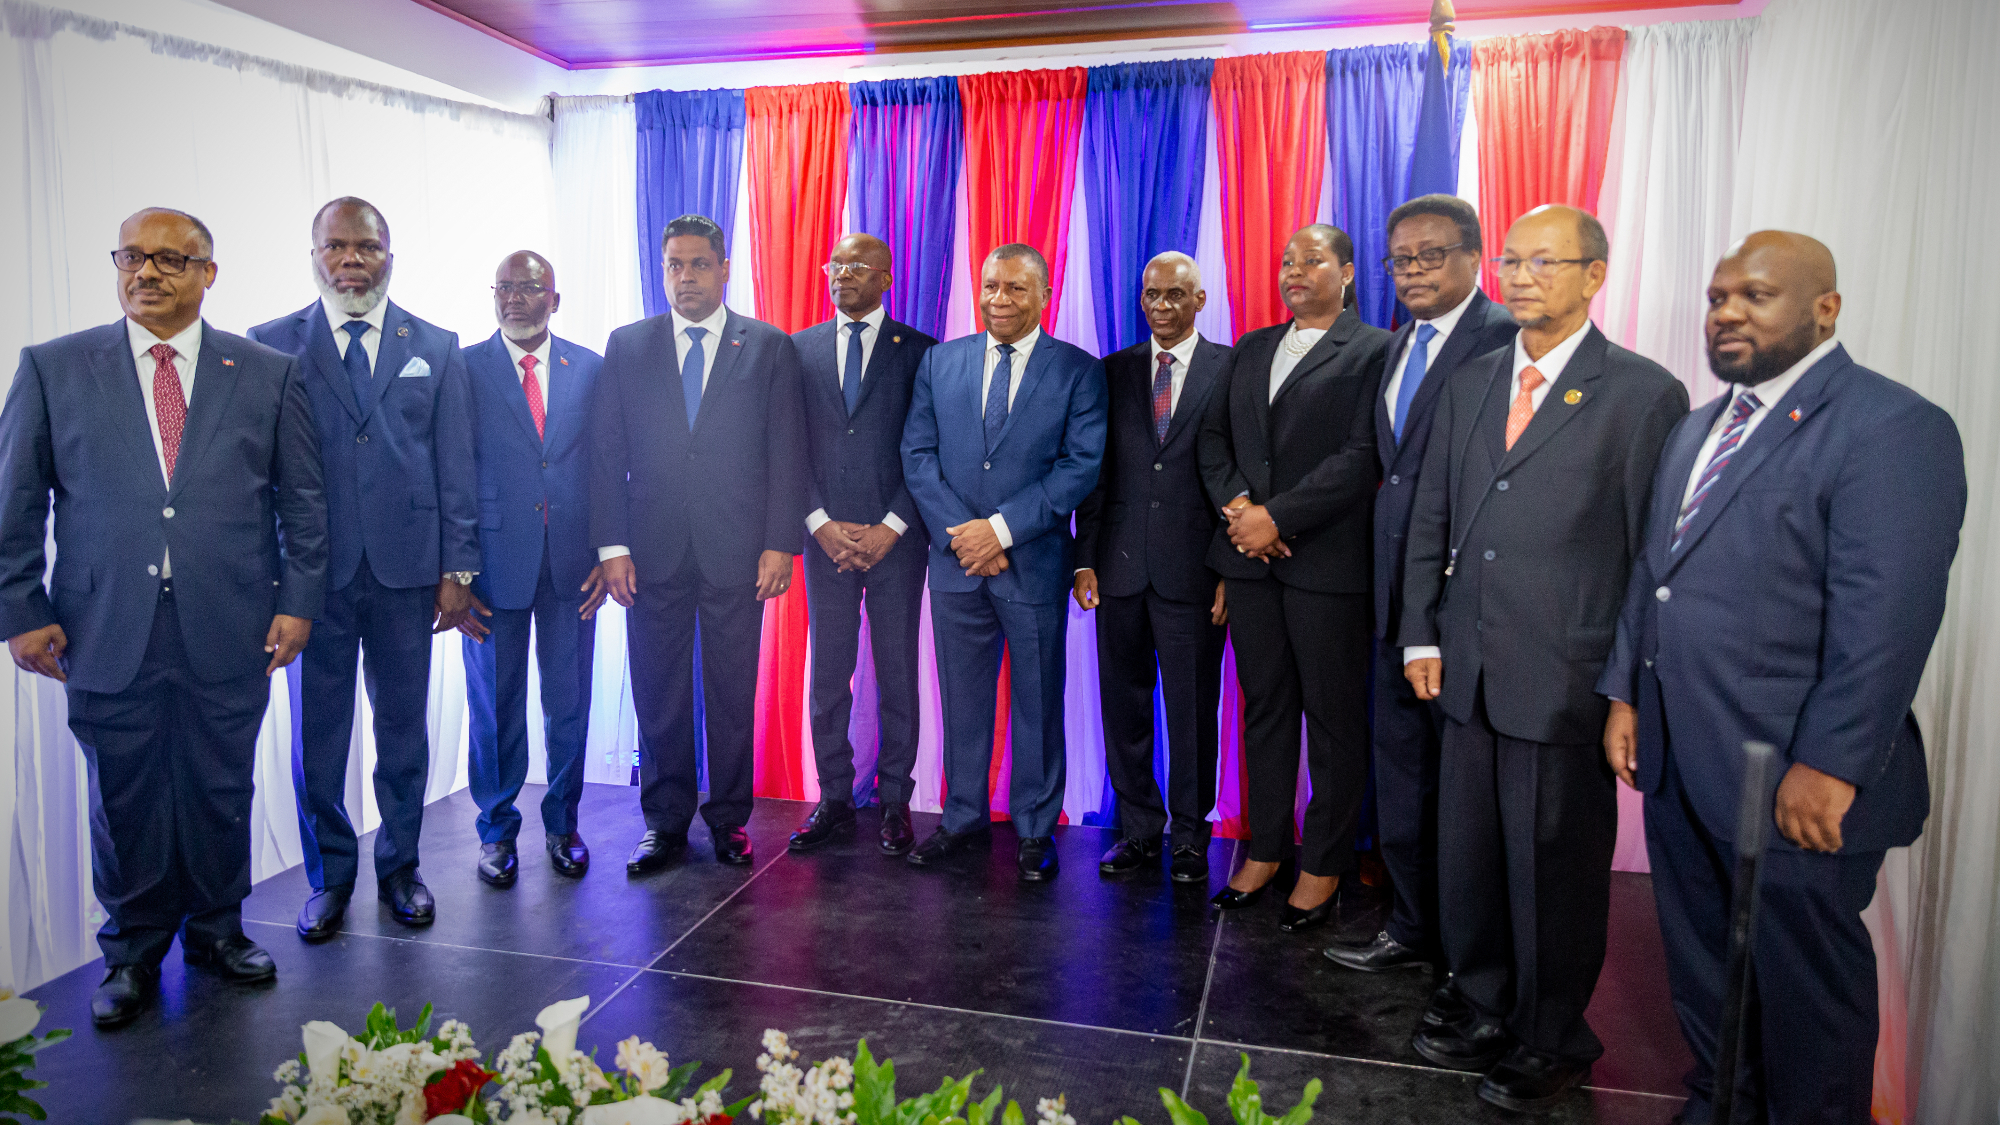 Haitis Interimsrat und vereidigter Premierminister